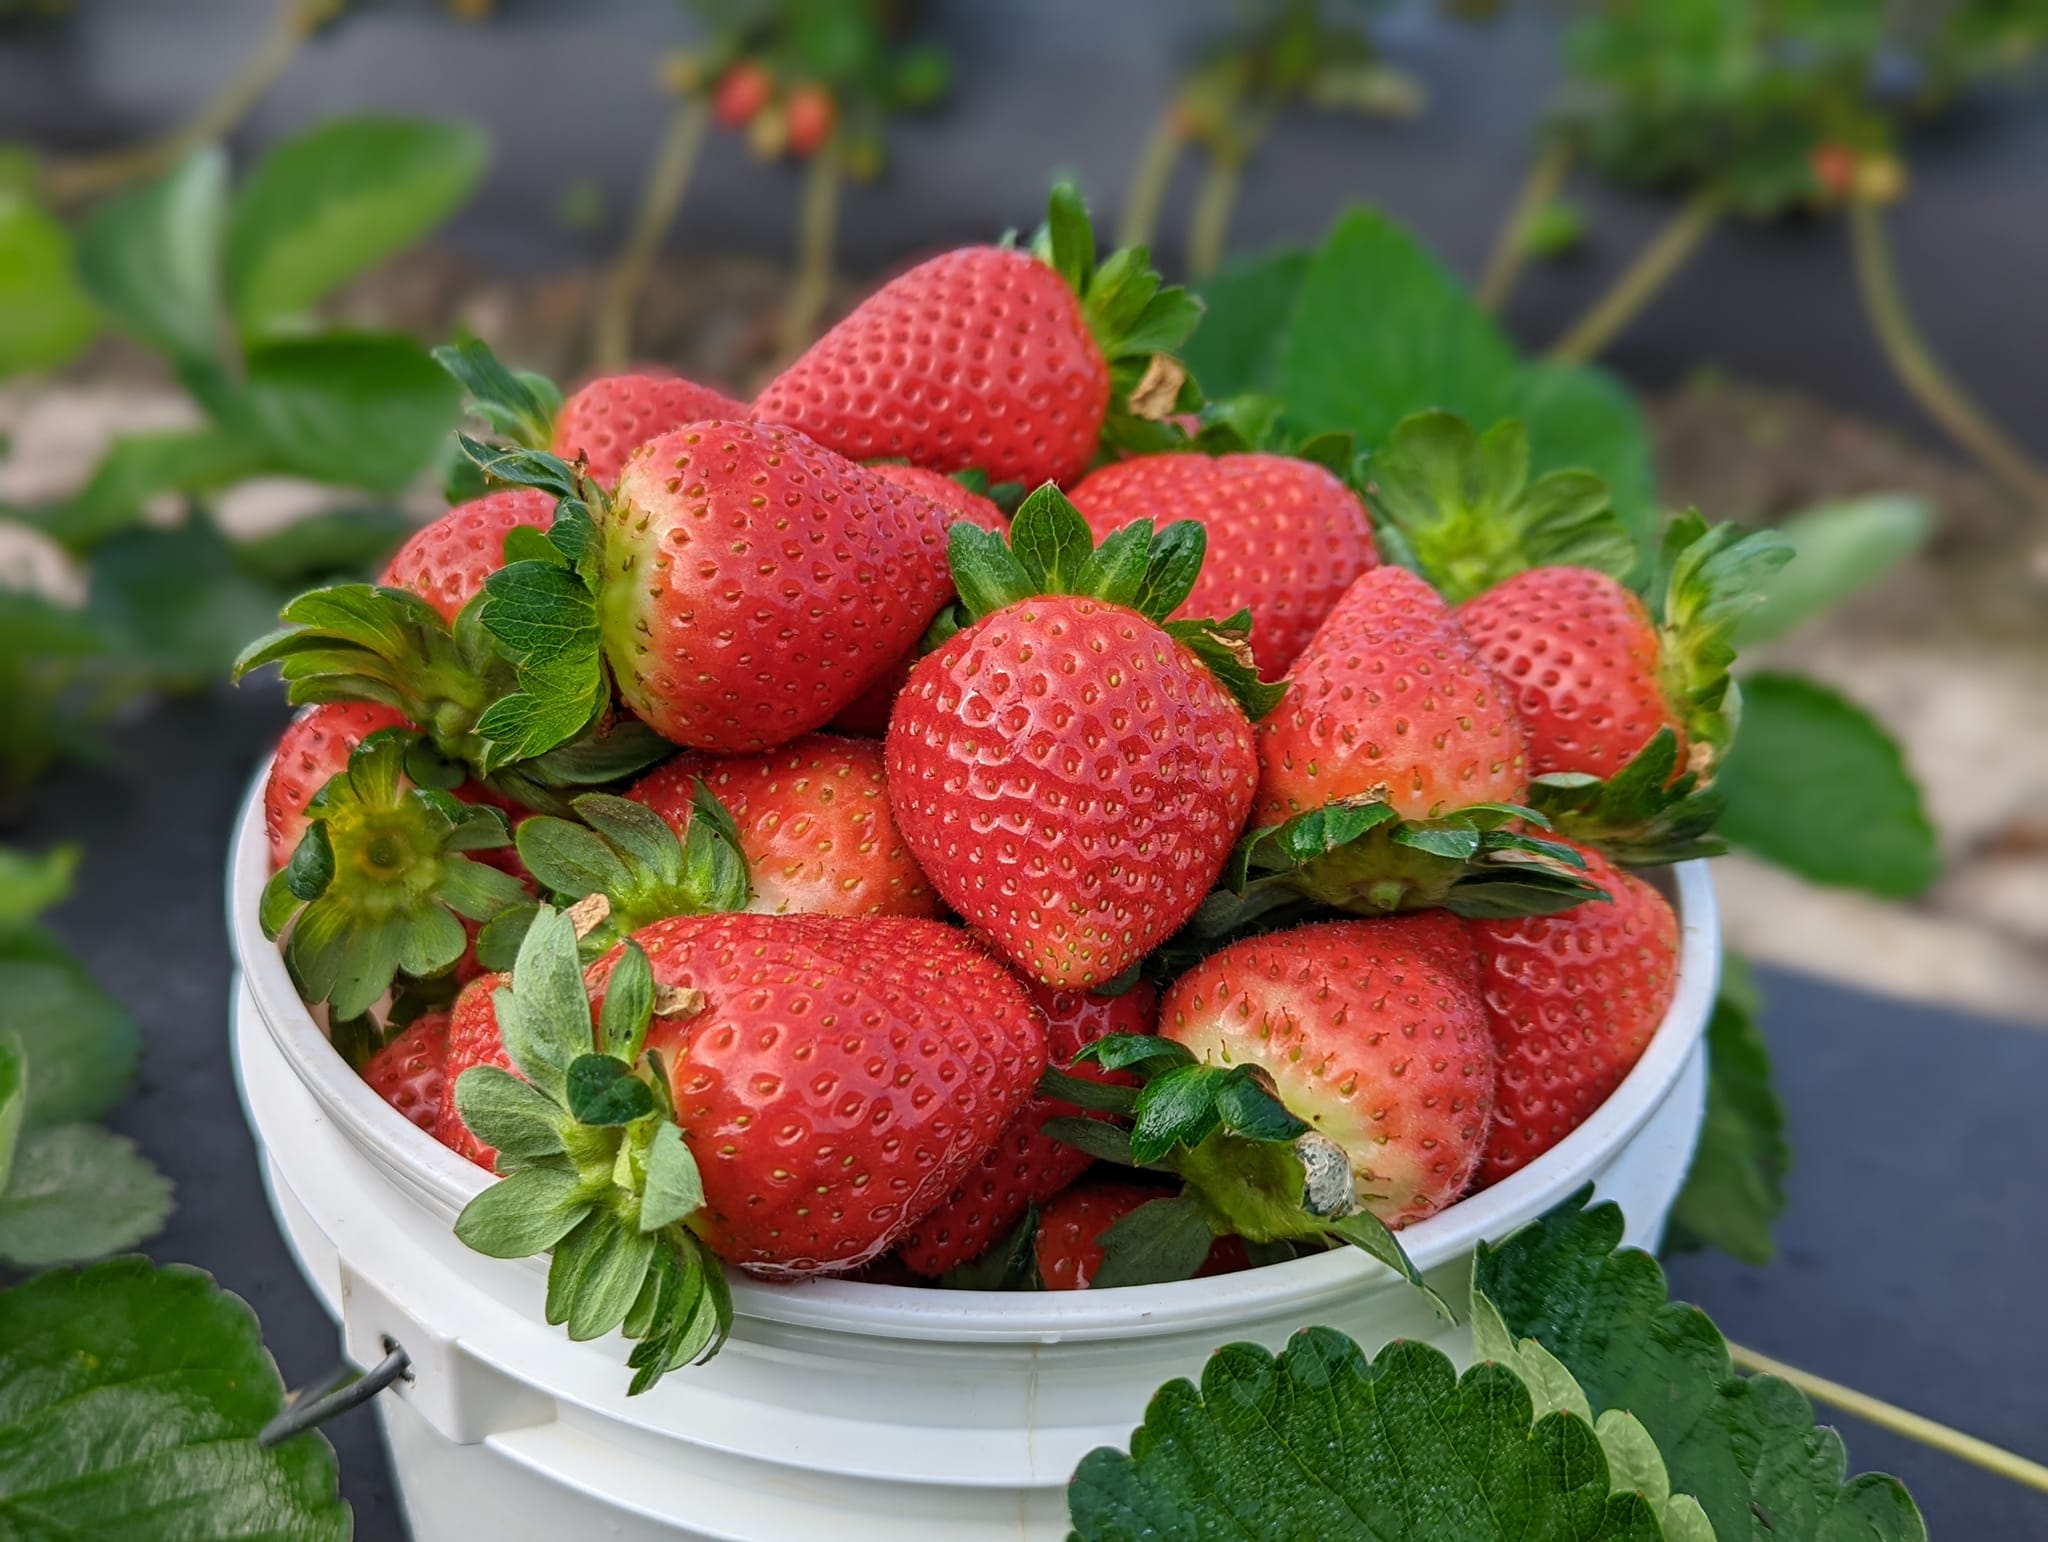 U-pick strawberries at JG Ranch